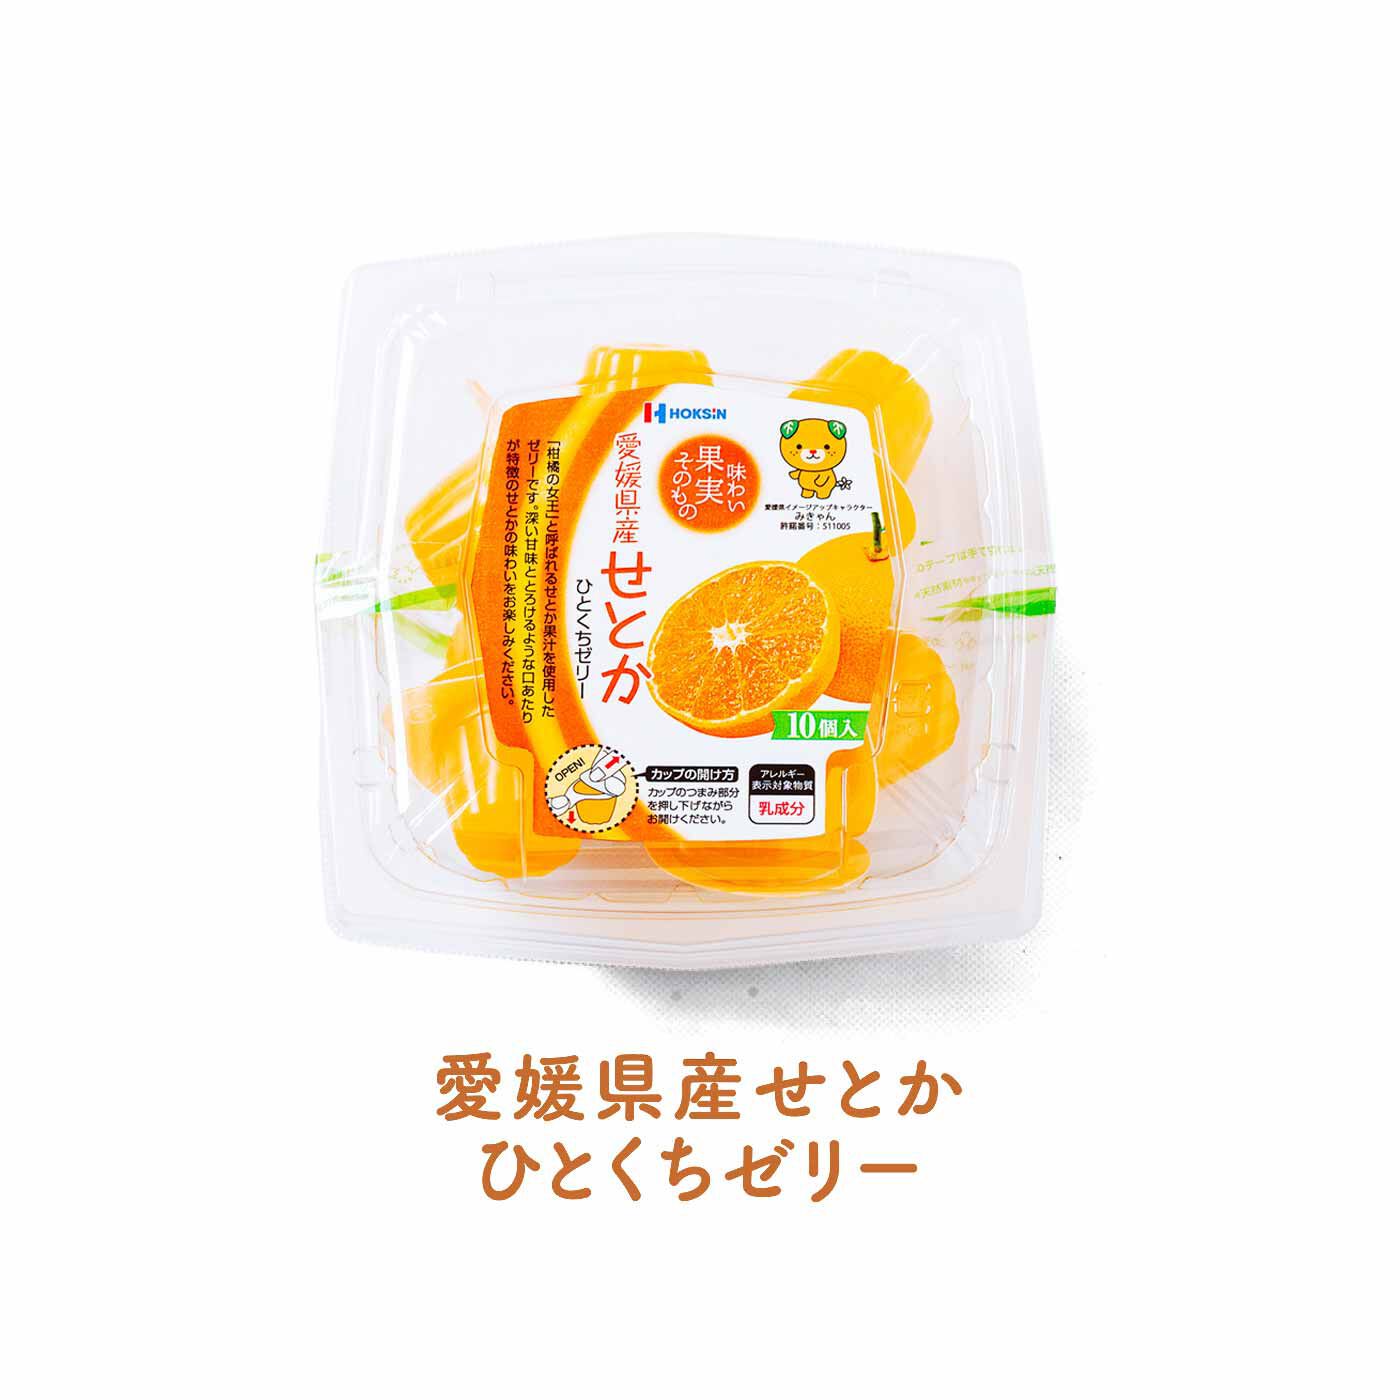 FELISSIMO PARTNERS|「ちょっと」に応えてくれる 日本の果物を味わう ちいさなゼリーの会（8回予約）|「柑橘の女王」と呼ばれるせとかのジューシーな旨み、甘い香りをお楽しみください。